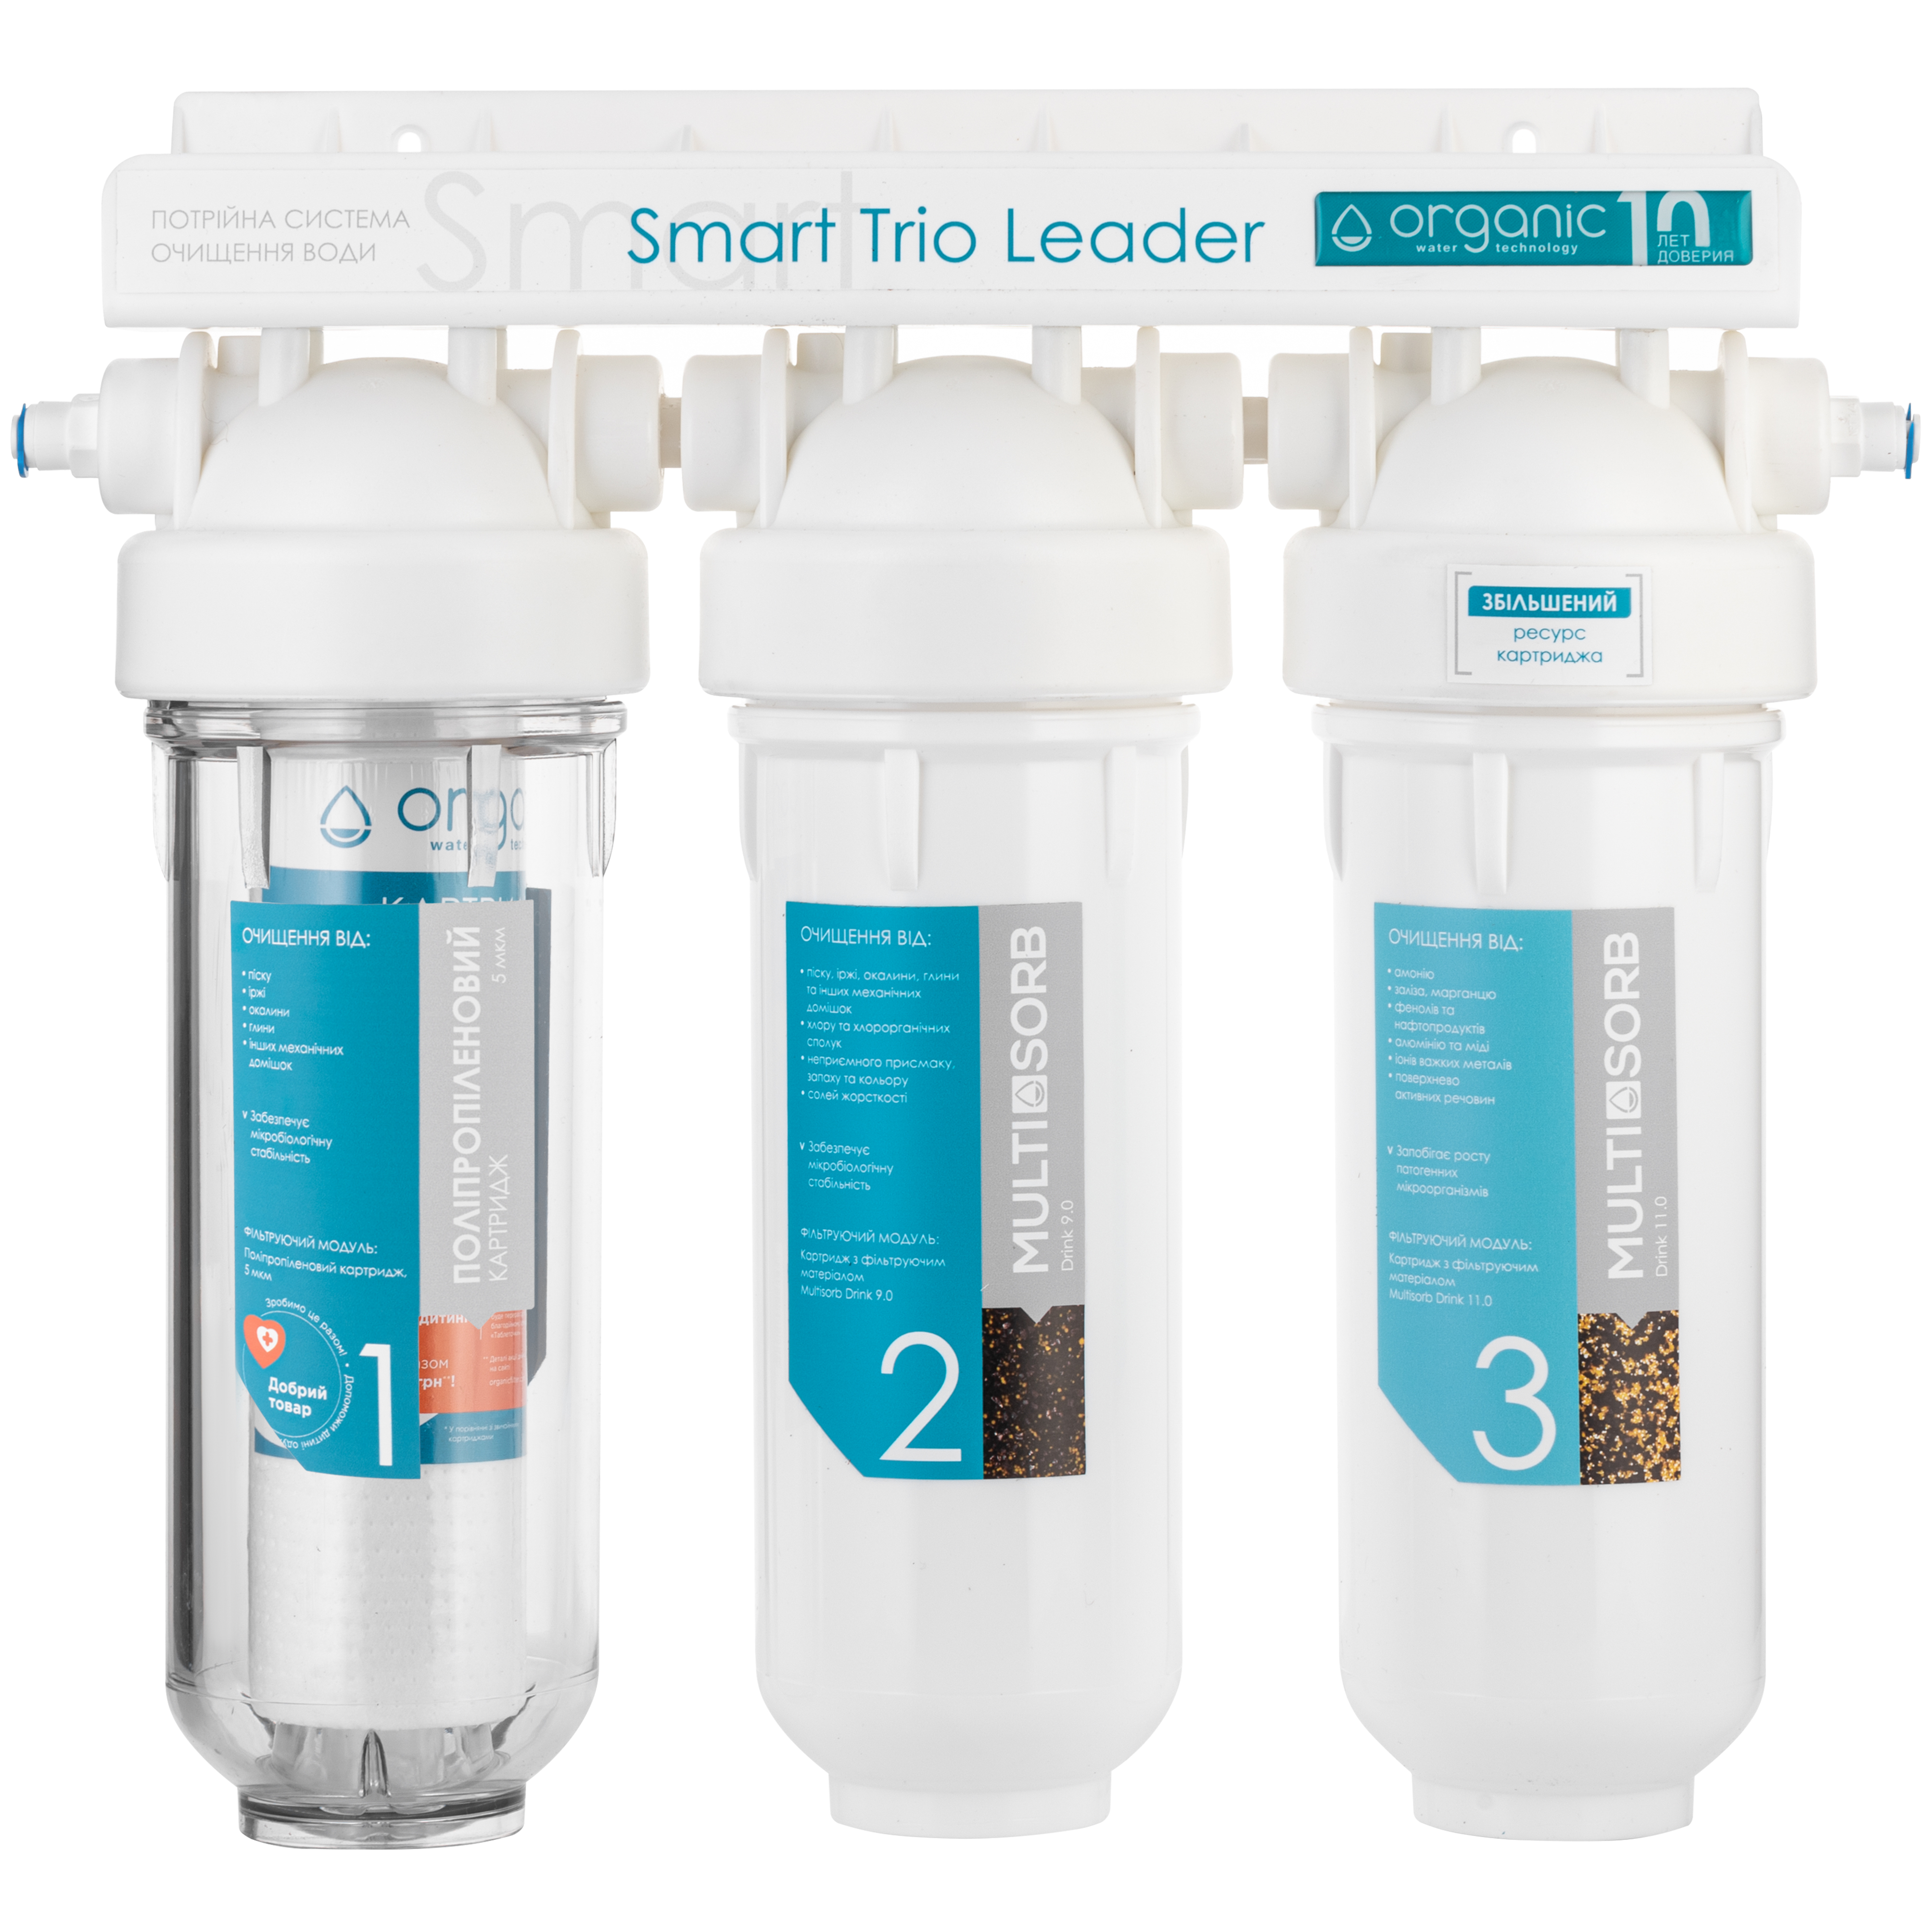 Характеристики фильтр для воды Organic Smart TRIO LEADER